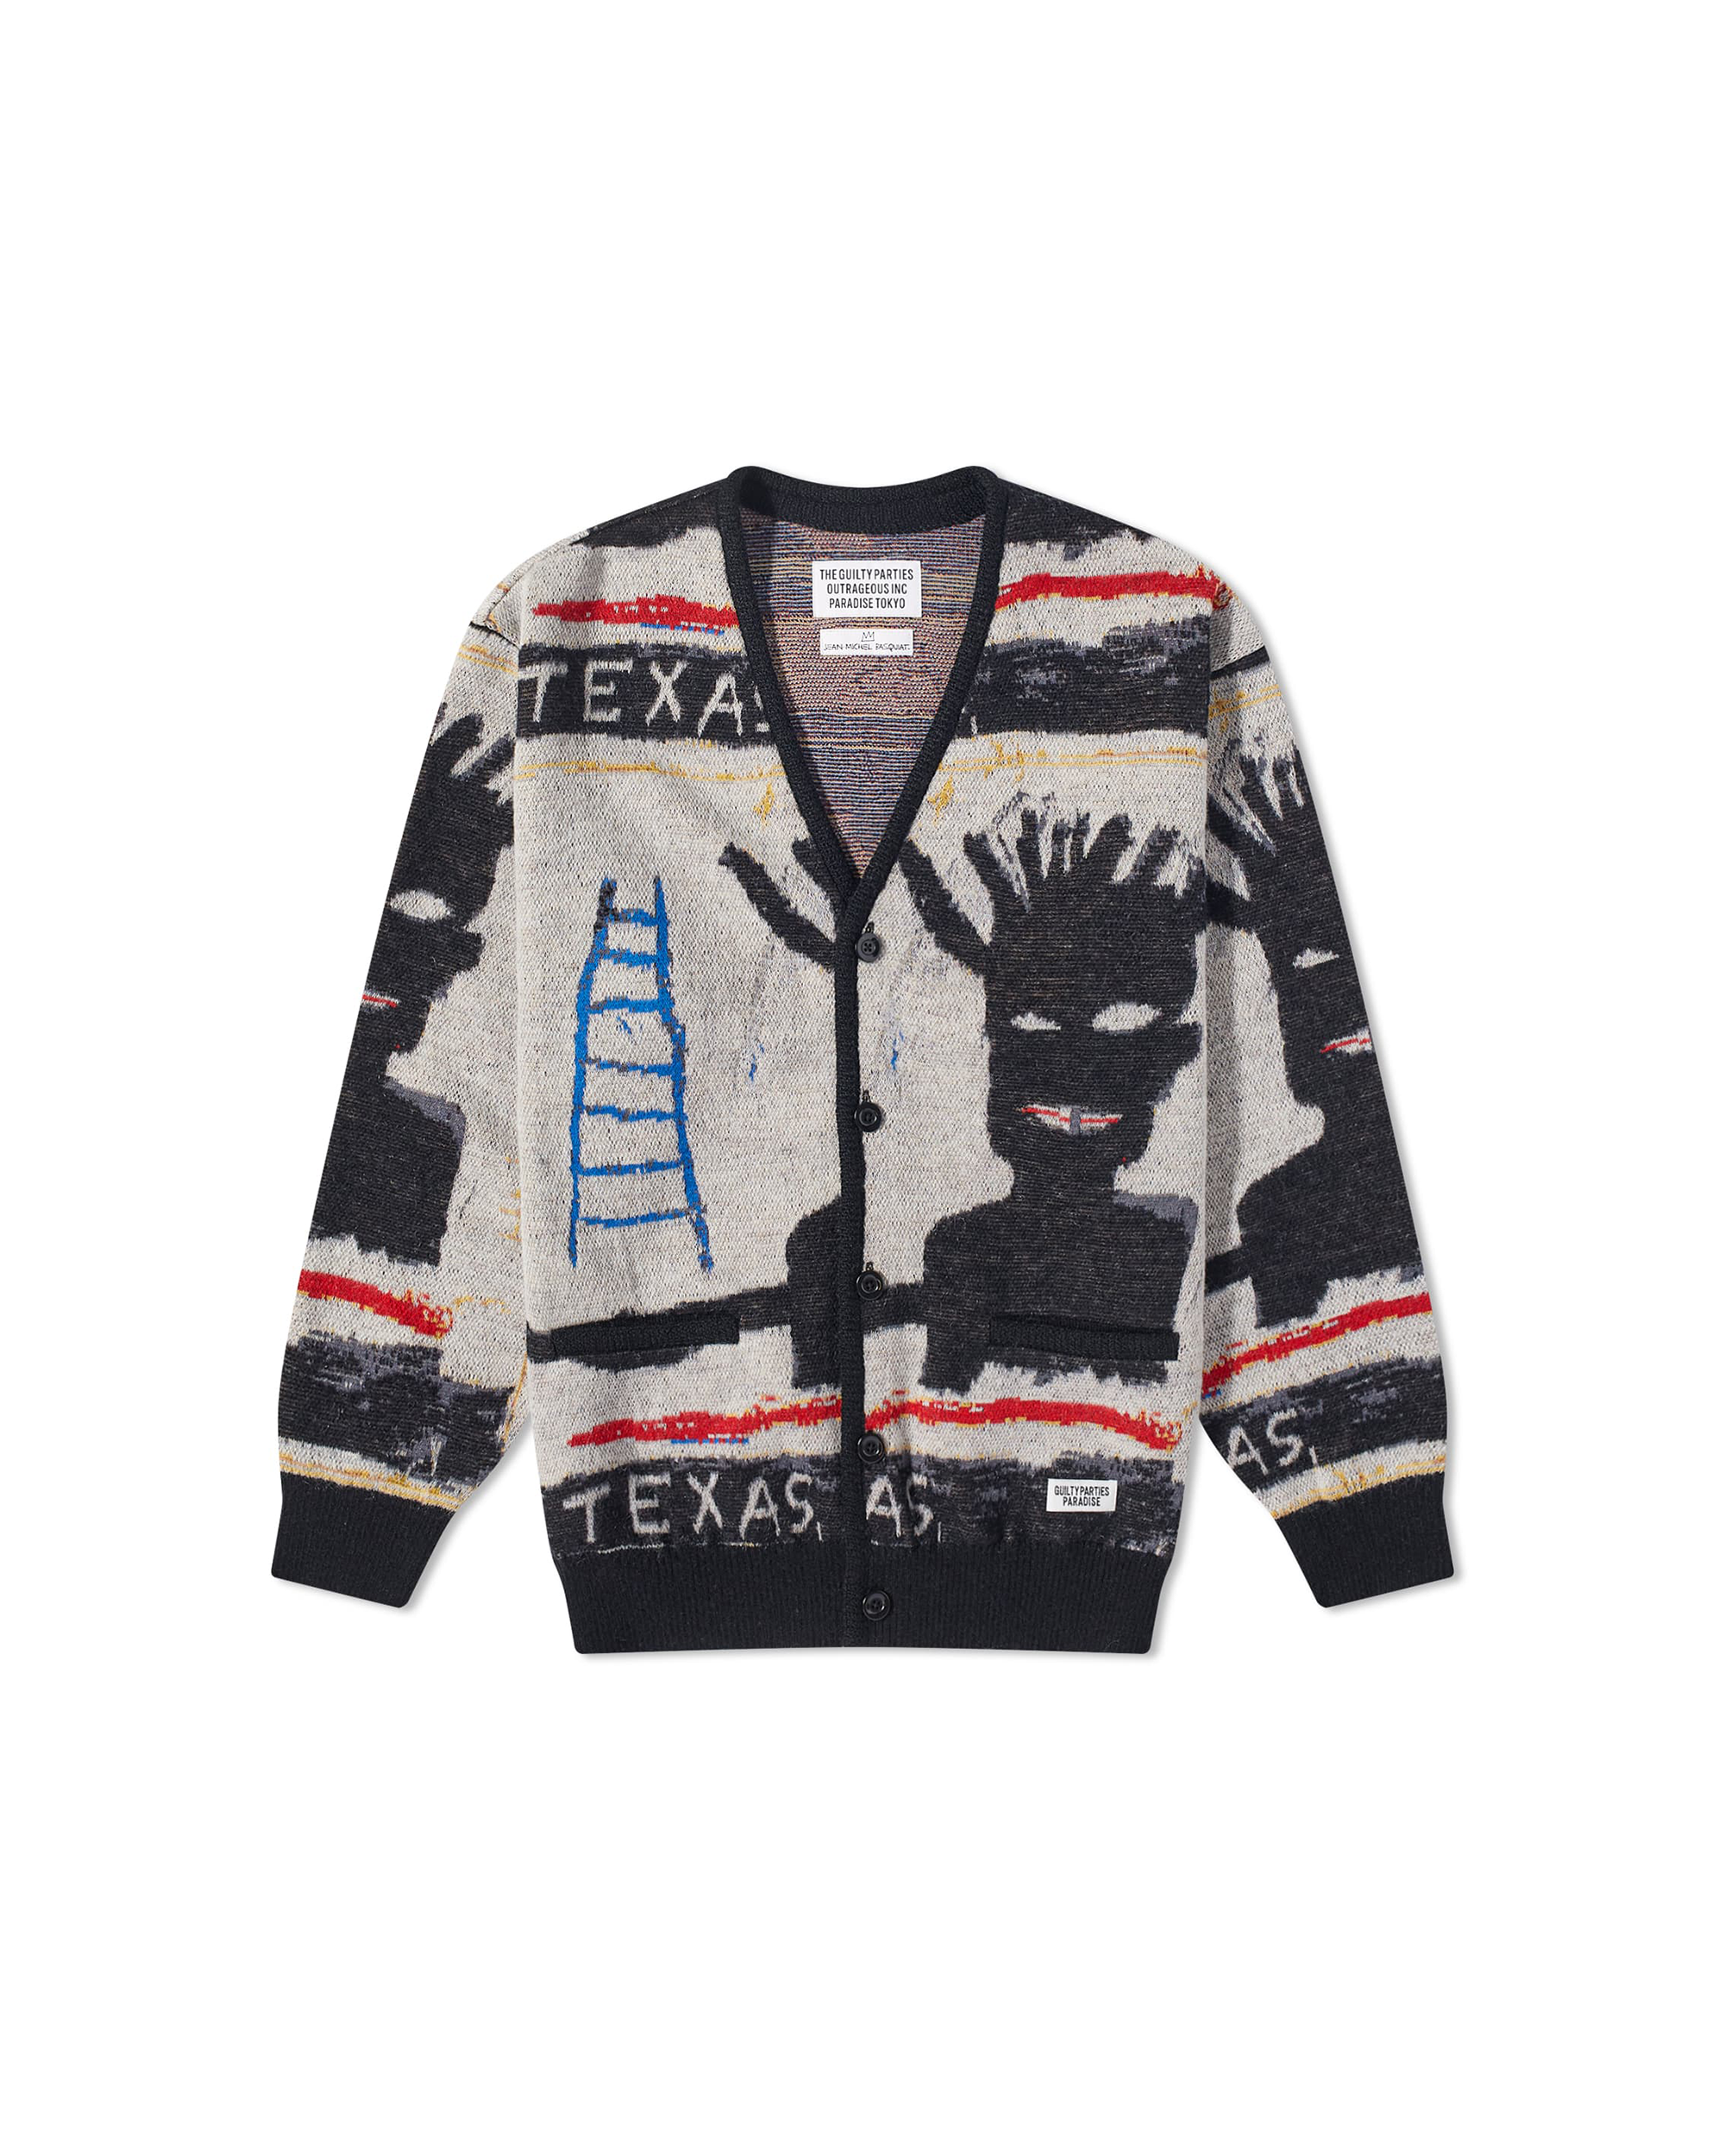 Jean Michel Basquiat - Cardigan (Type-1) - Multi